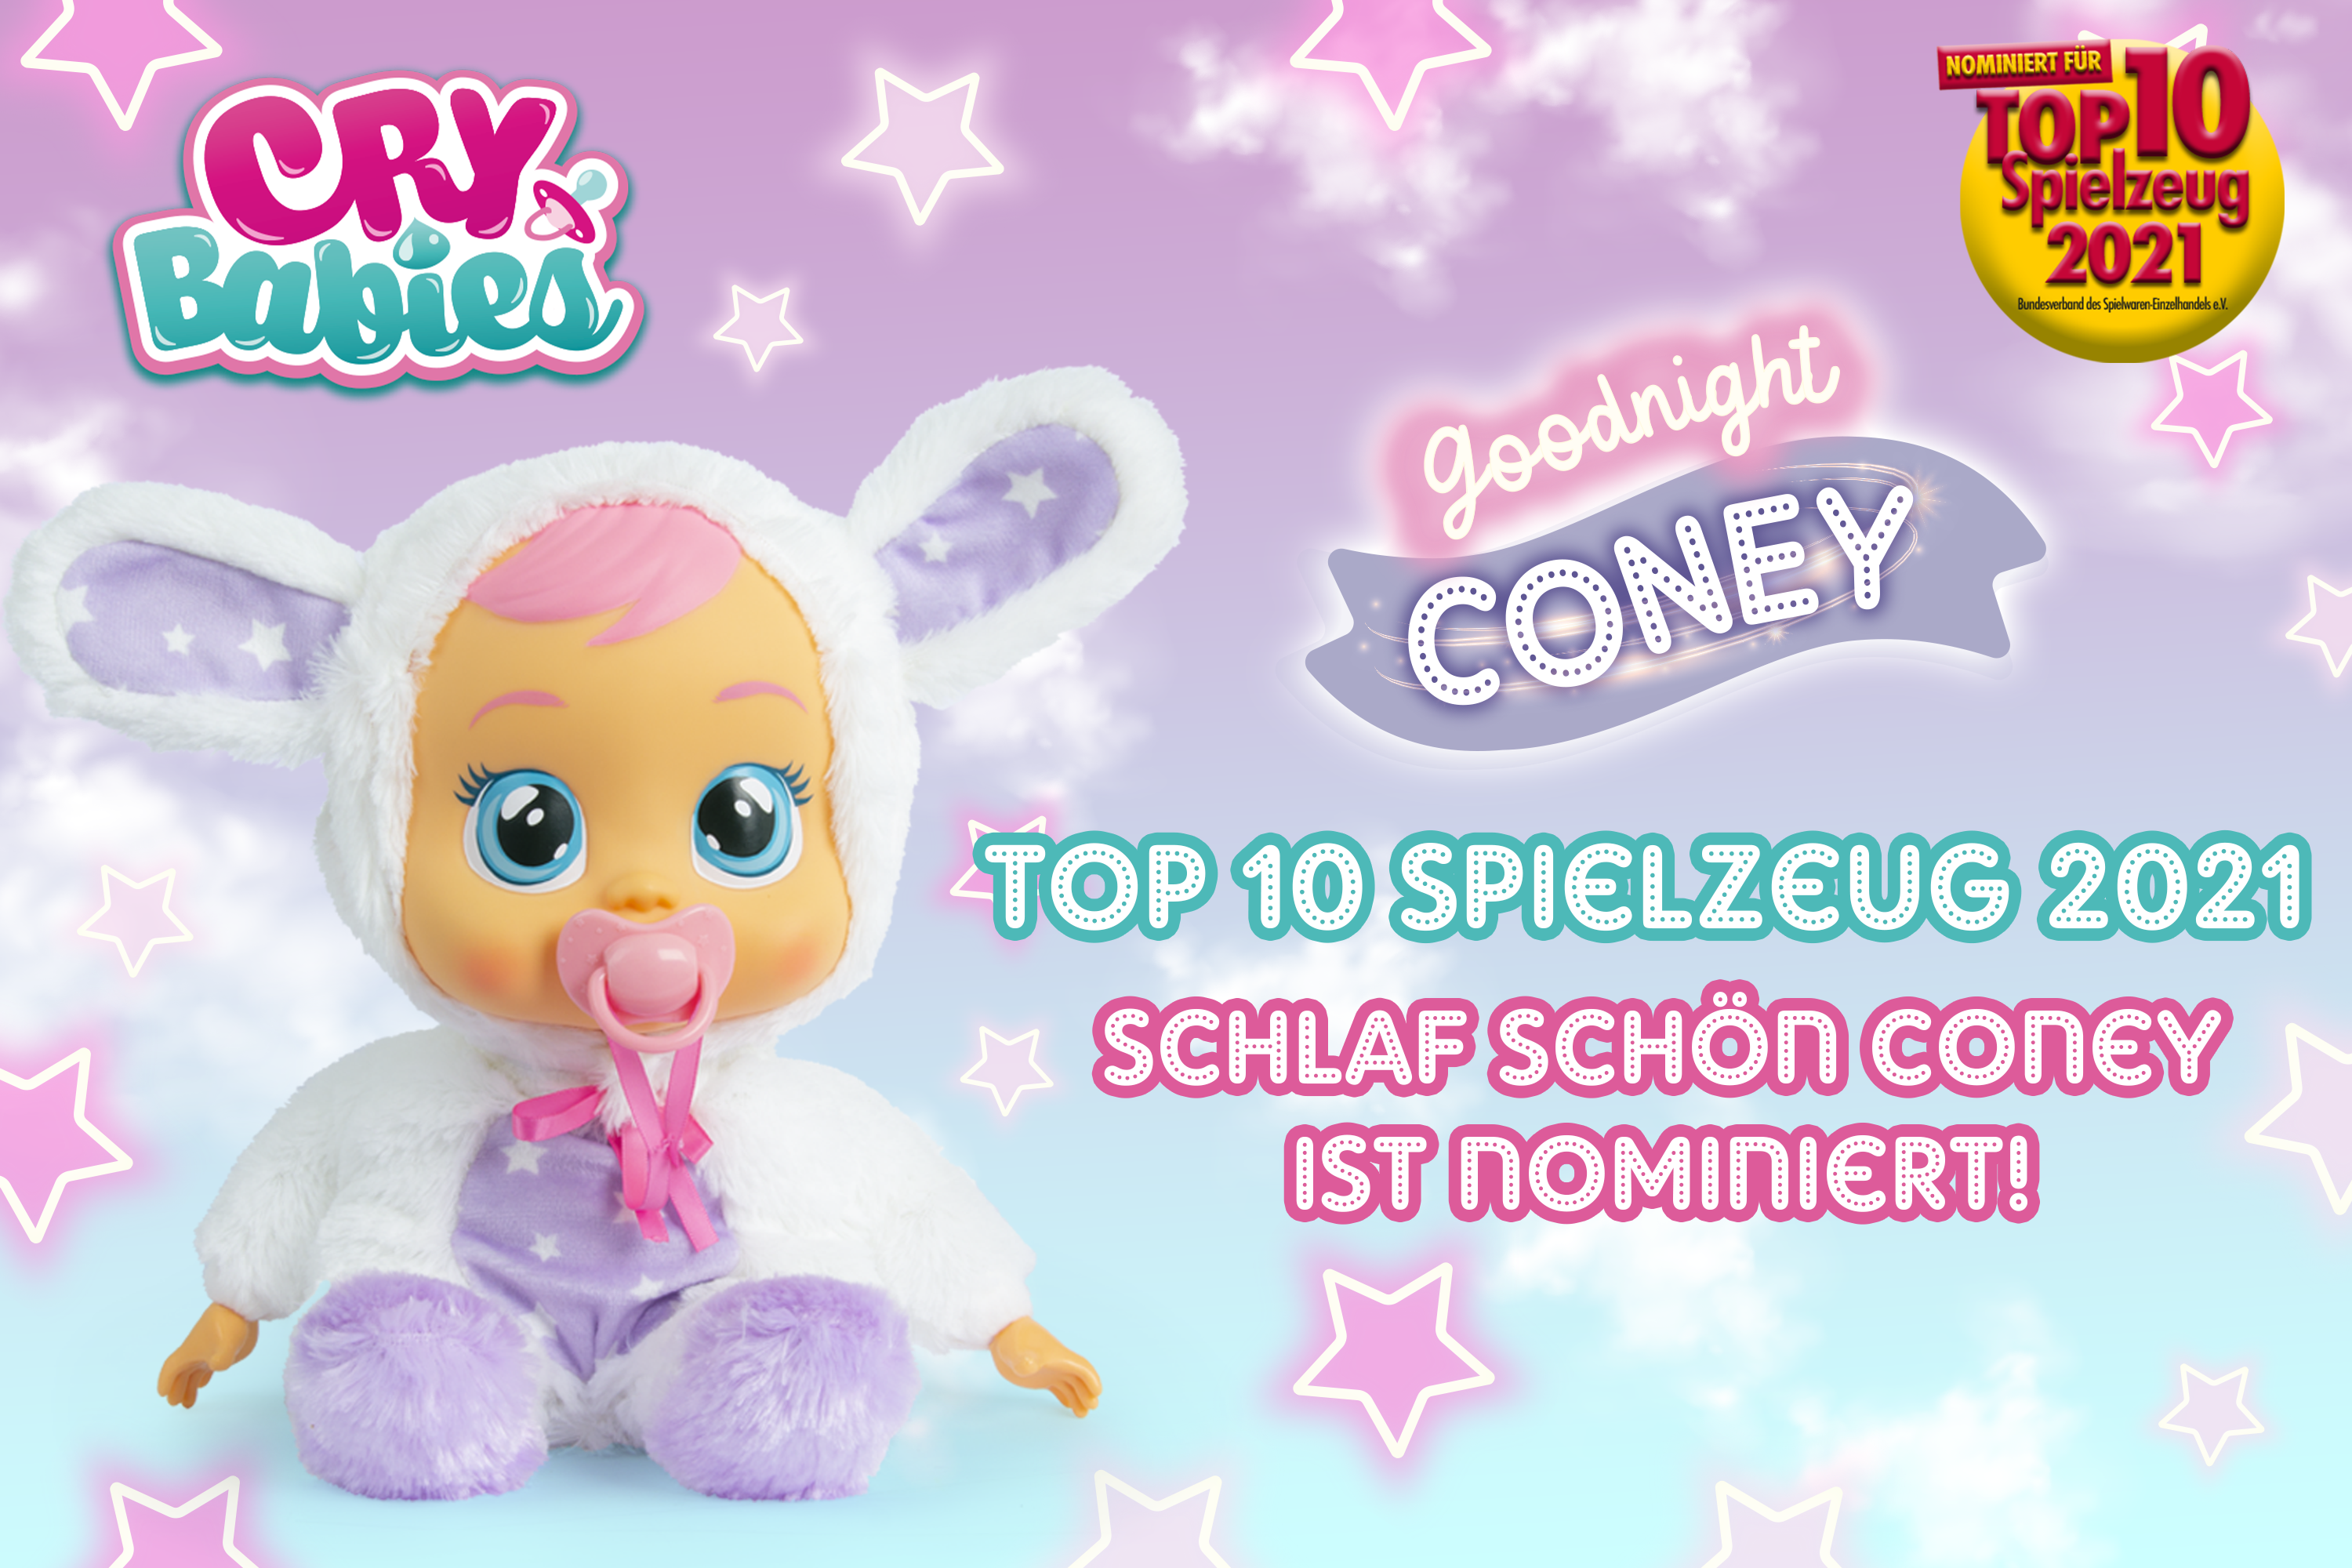 TOP 10 Spielzeug 2021:  „Schlaf schön Coney“ von IMC Toys Deutschland ist nominiert!